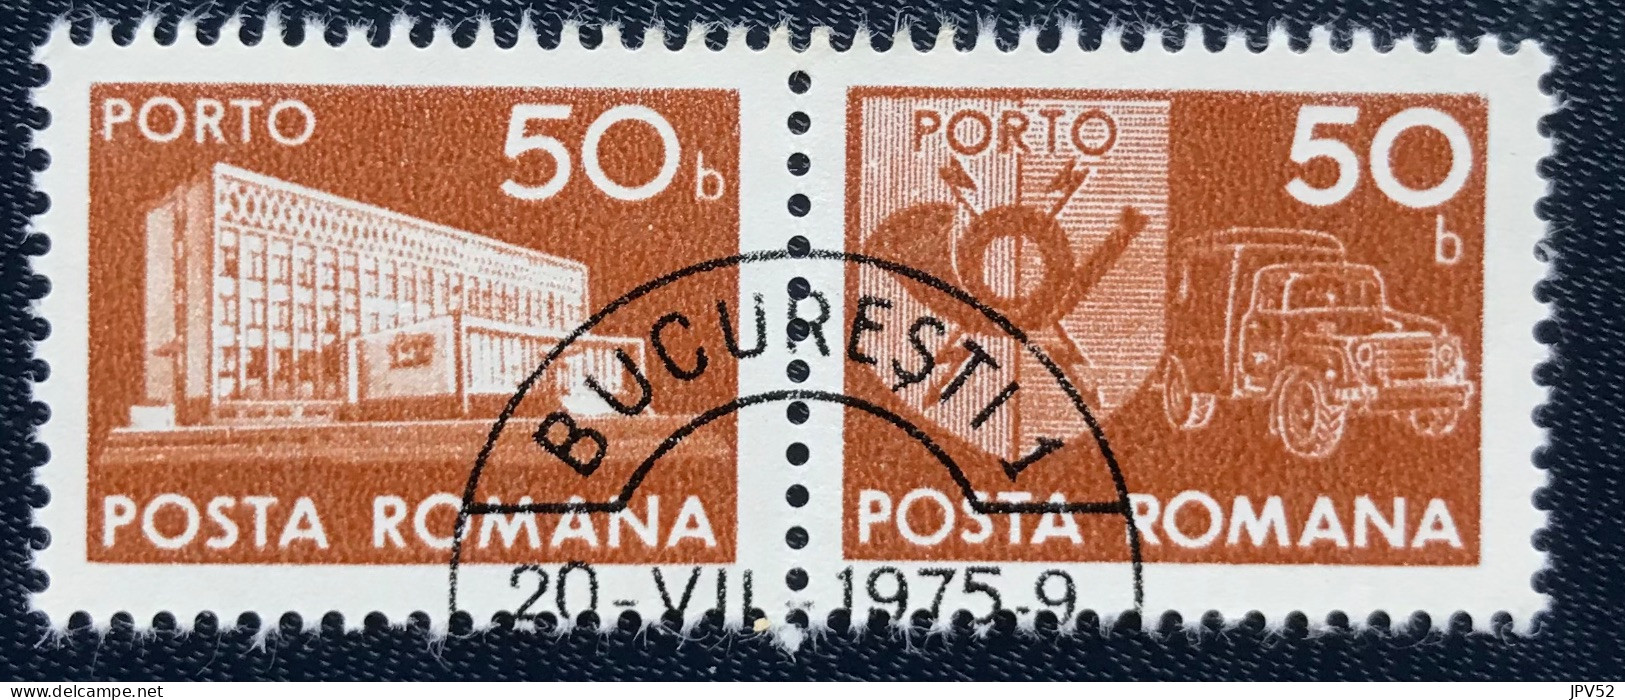 Romana - Roemenië - C14/55 - 1974 - (°)used - Michel 123 - Postkantoor & Postembleem & Postvoertuig - BUCURESTI - Strafport